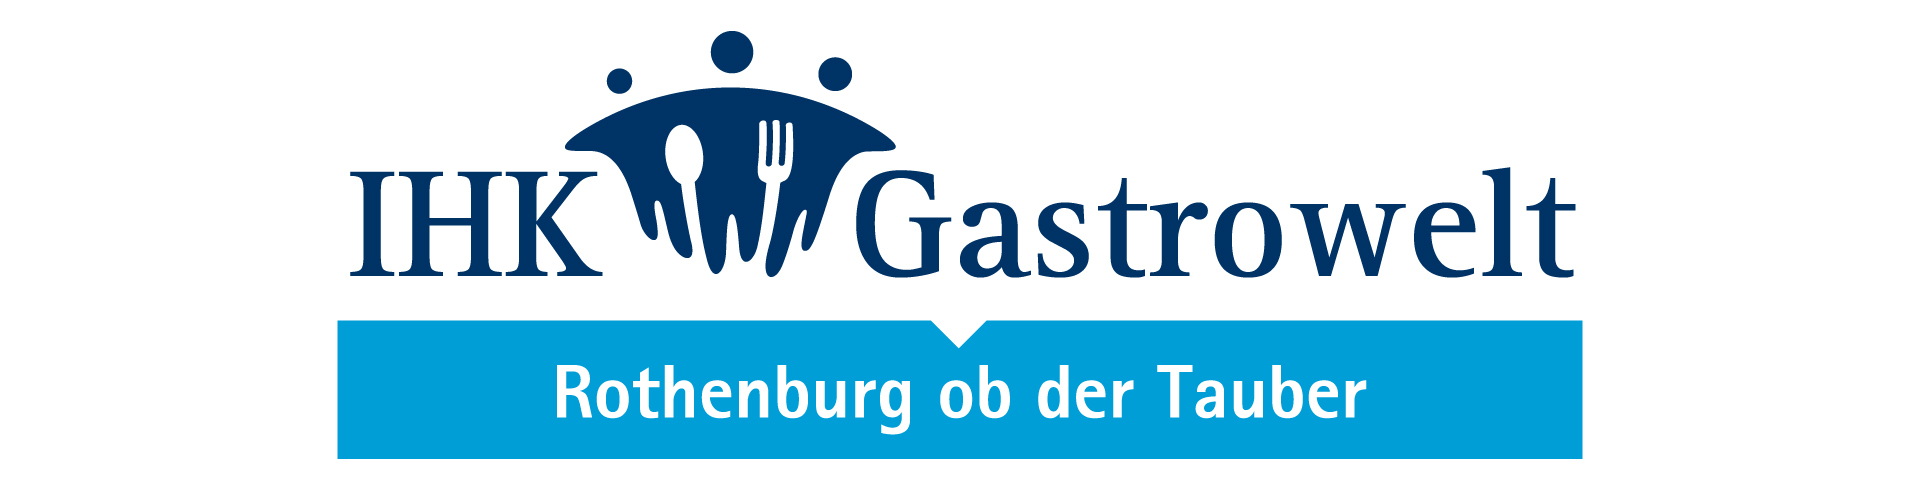 IHK-Akademie Mittelfranken - IHK-Gastrowelt Logo quer